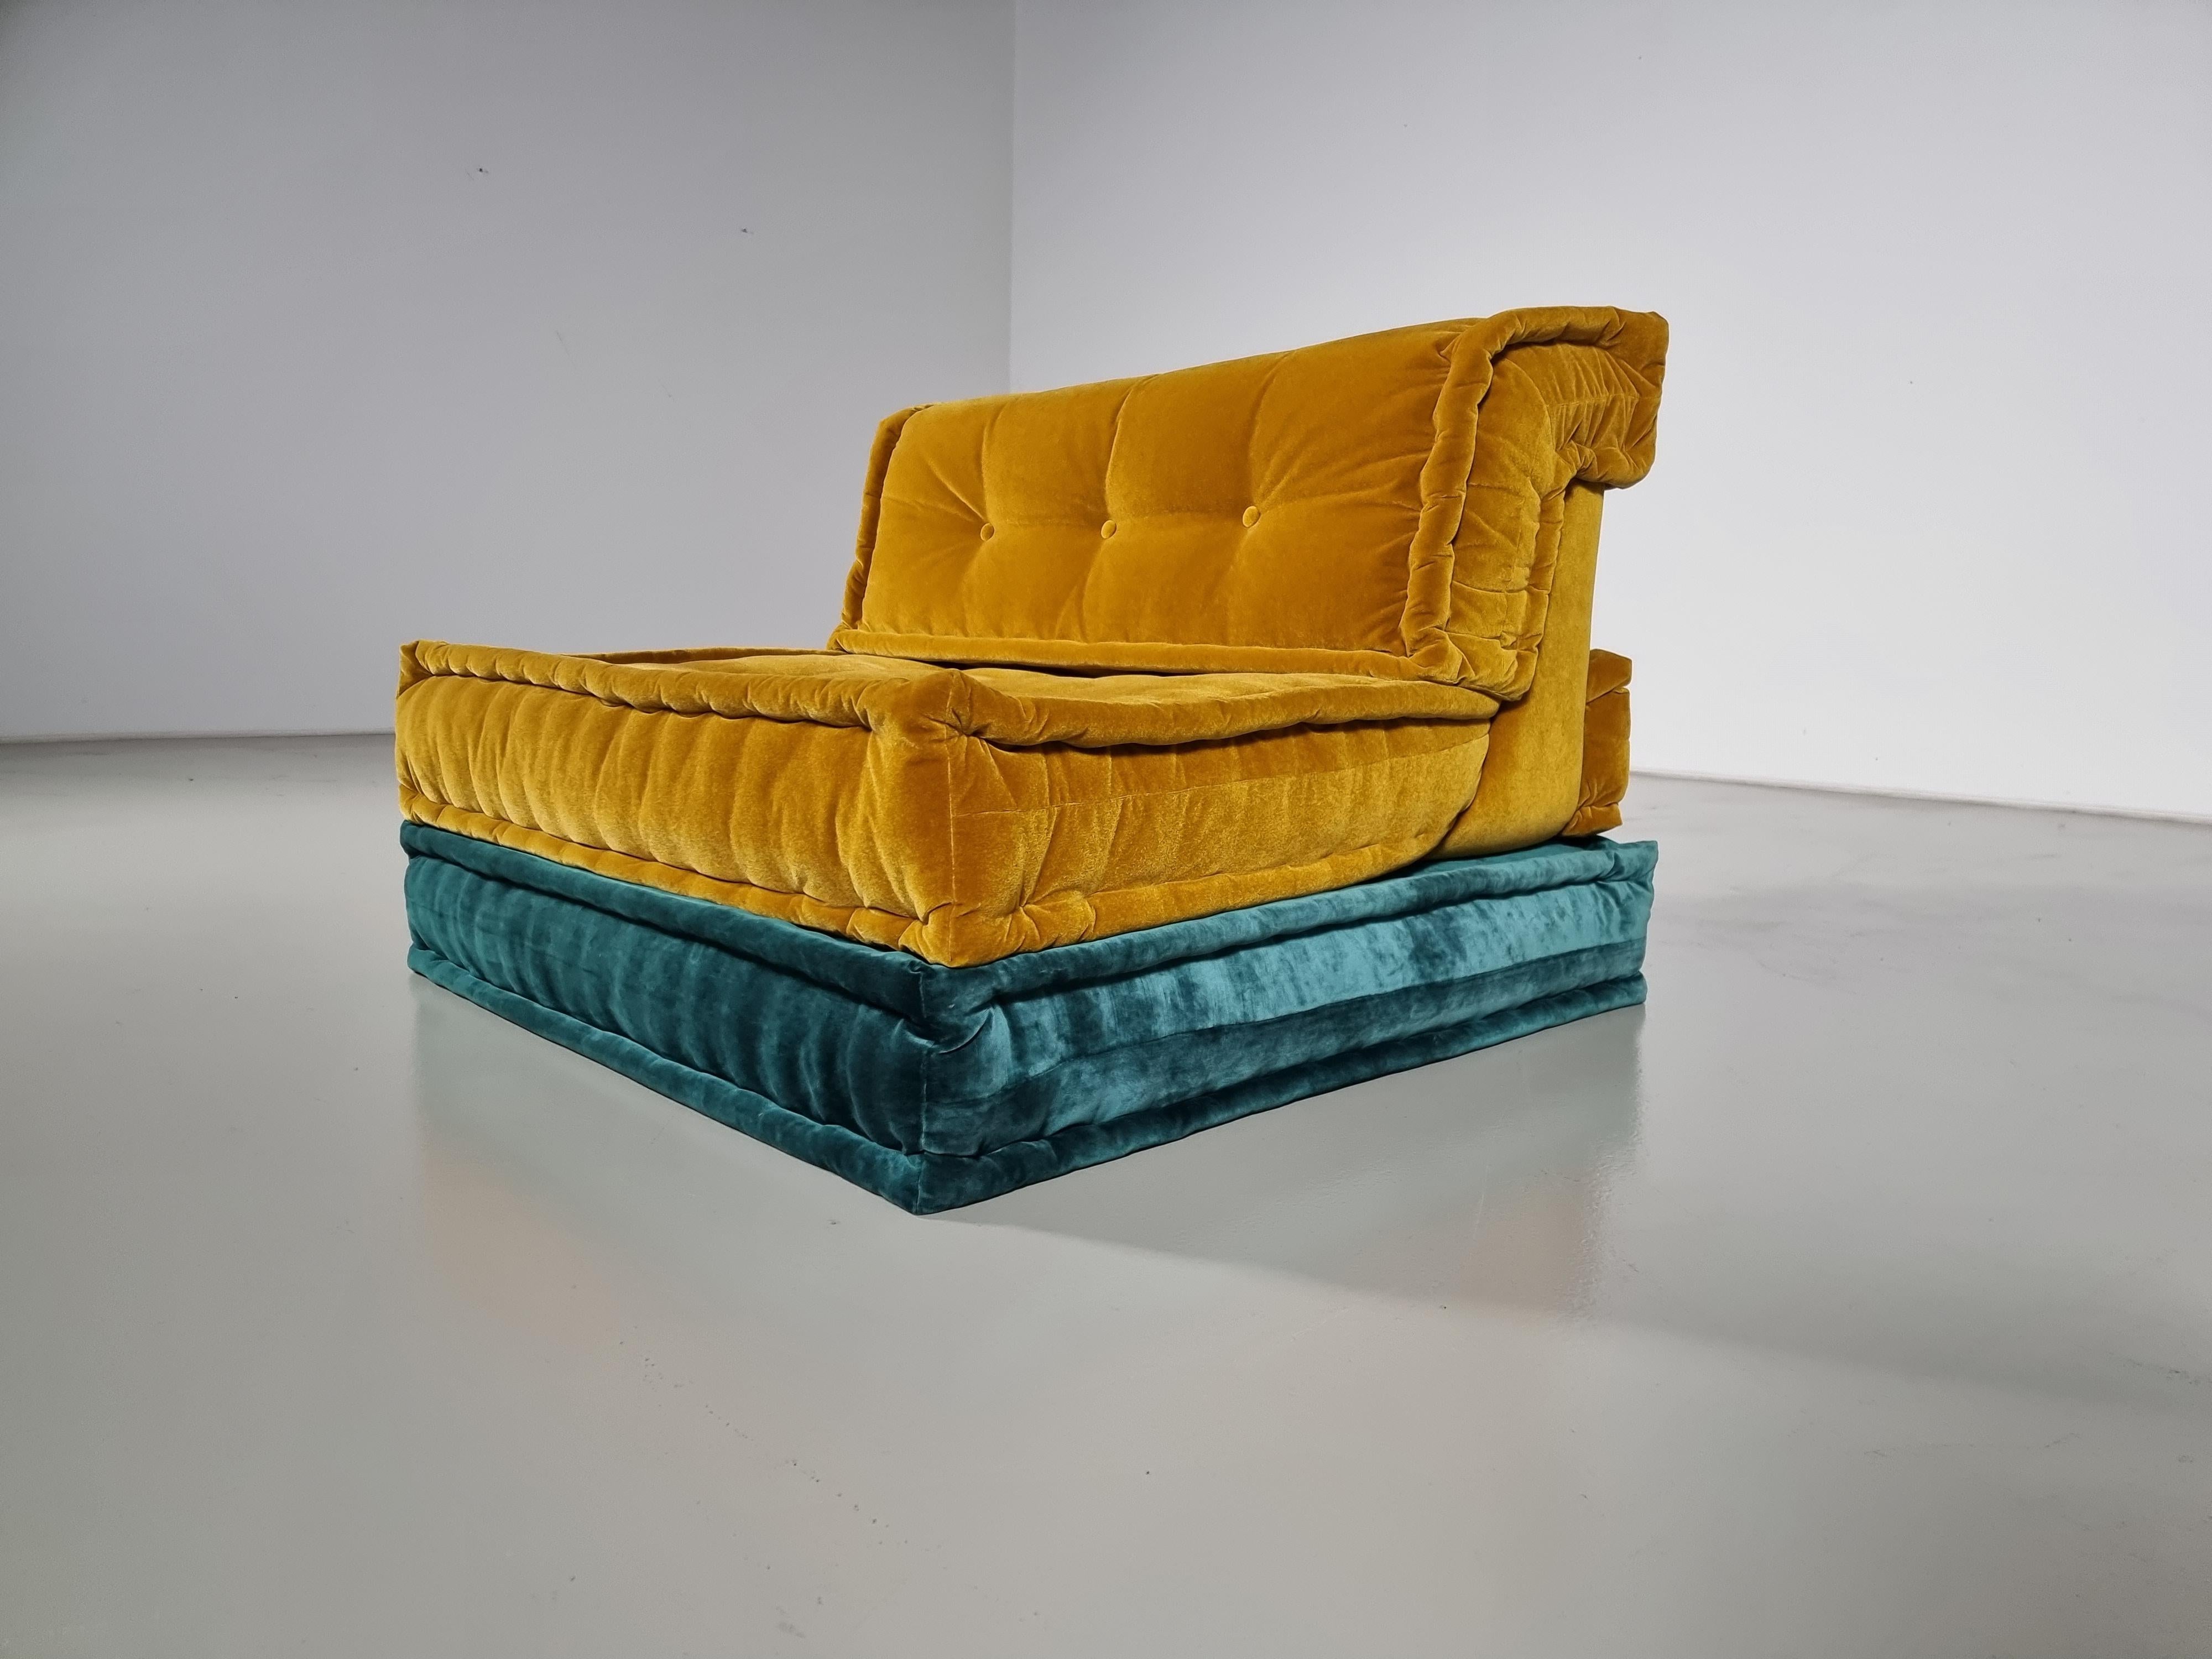 Chaise longue Mah Jong en velours jaune et bleu de Hans Hopfer, conçue en 1971 pour Roche Bobois.  

Le Mah Jong de Hopfer est l'un des sièges les plus emblématiques du milieu du siècle dernier. Le textile luxueux et saisissant de Missoni lui